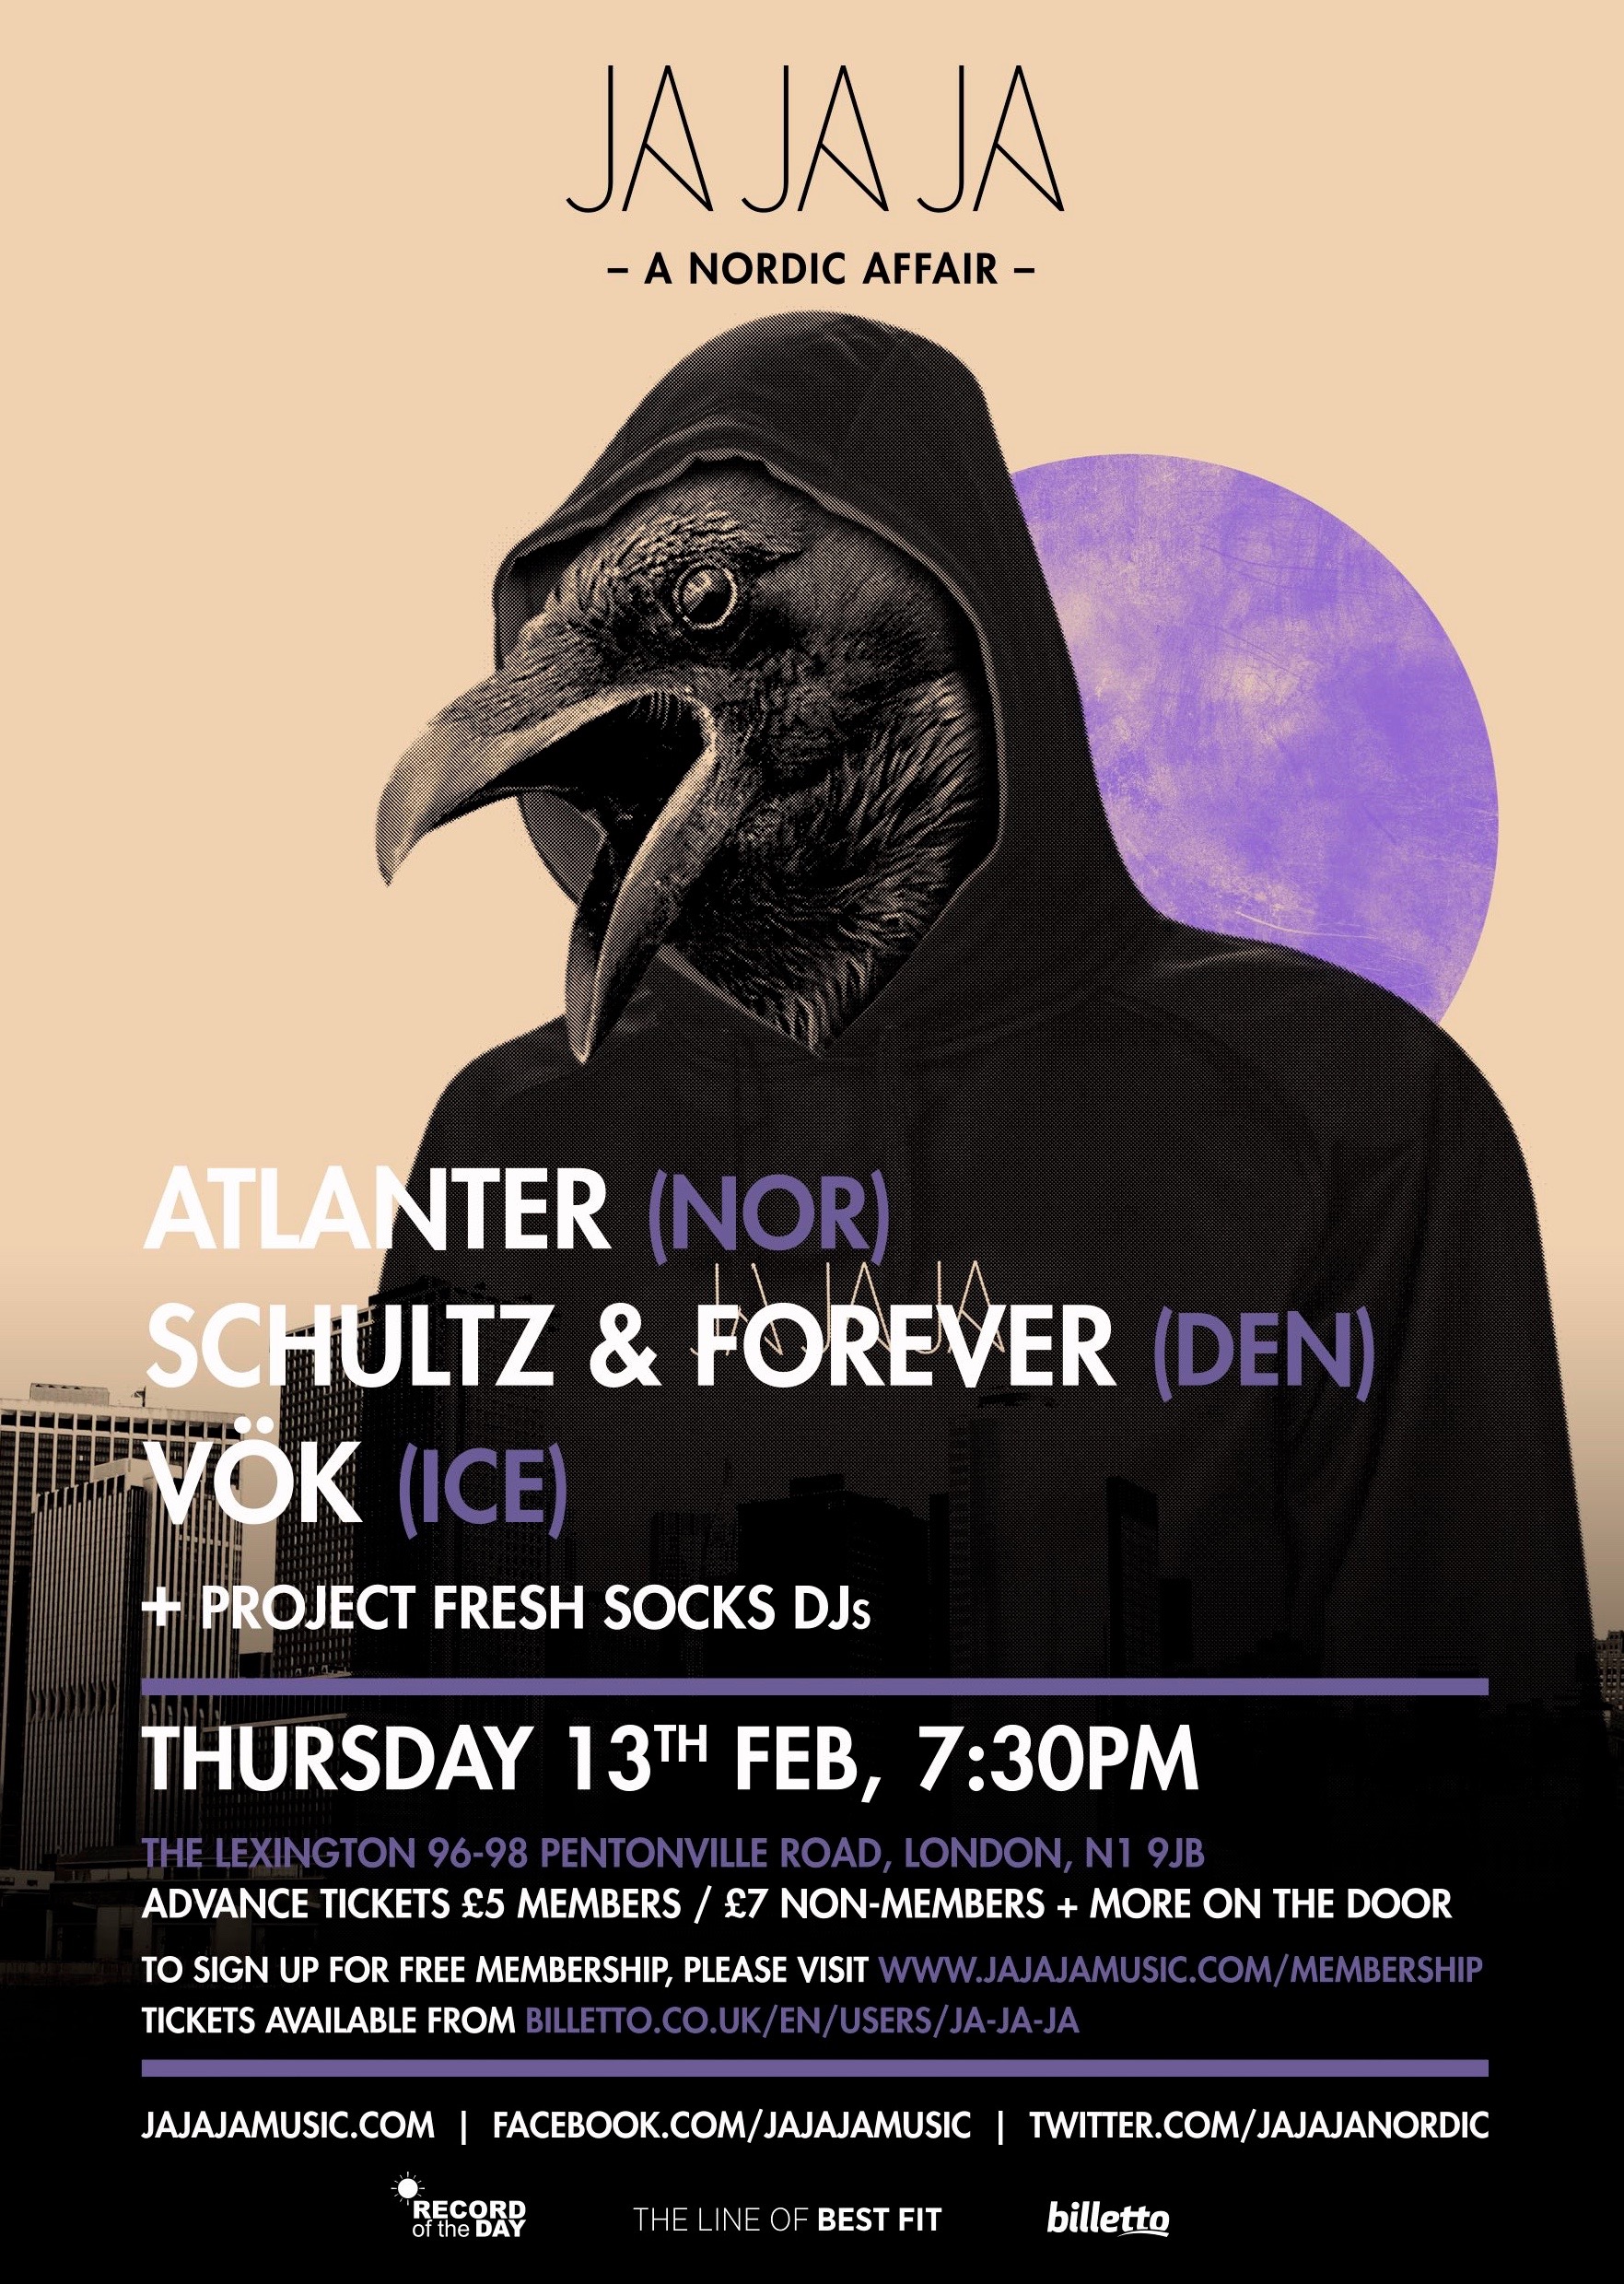 February 2014 – Atlanter, Schultz & Forever and Vök